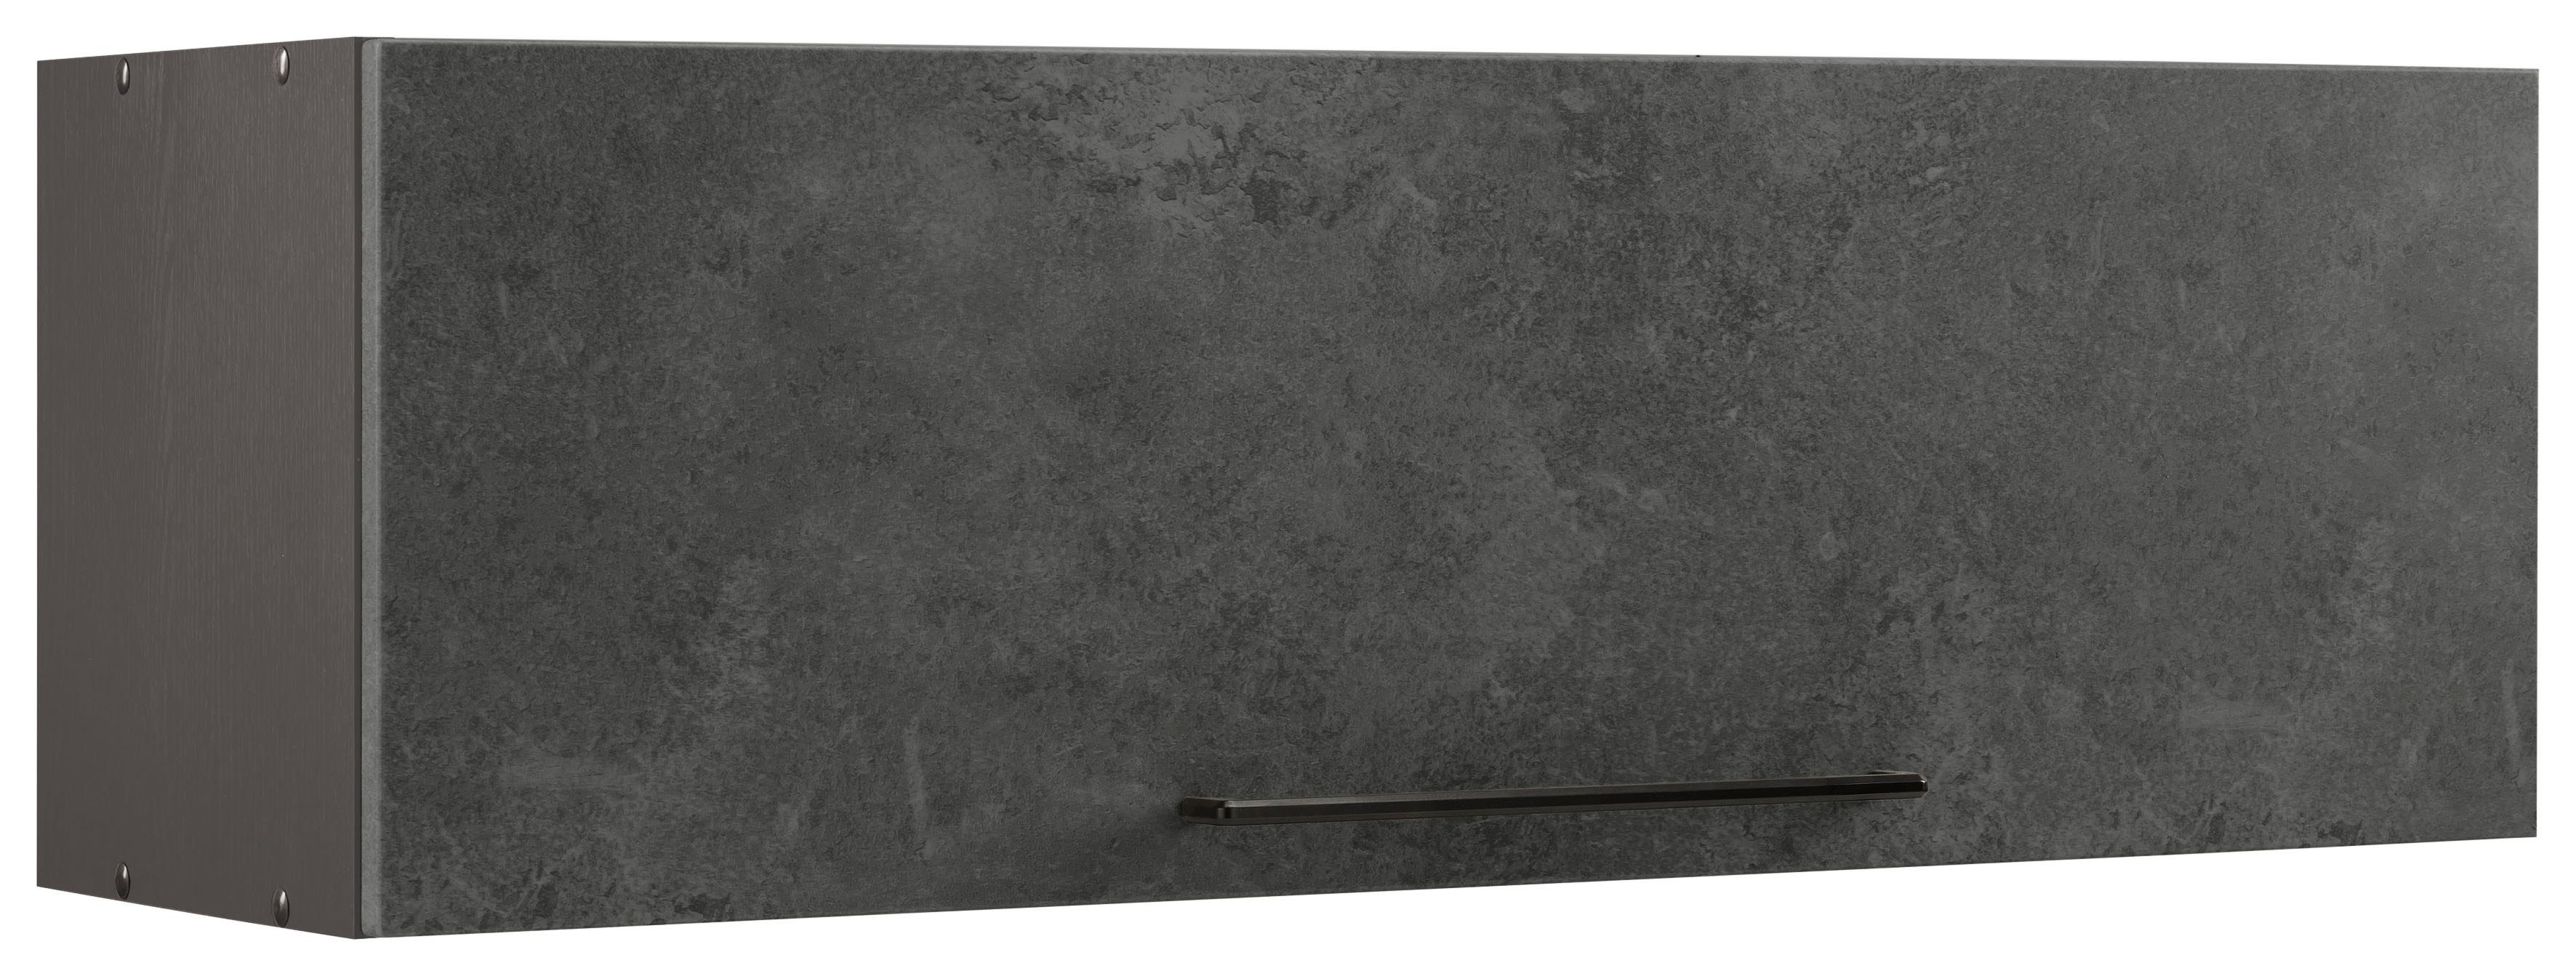 HELD MÖBEL Klapphängeschrank Tulsa 100 cm breit, mit 1 Klappe, schwarzer Metallgriff, MDF Front betonfarben dunkel | grafit